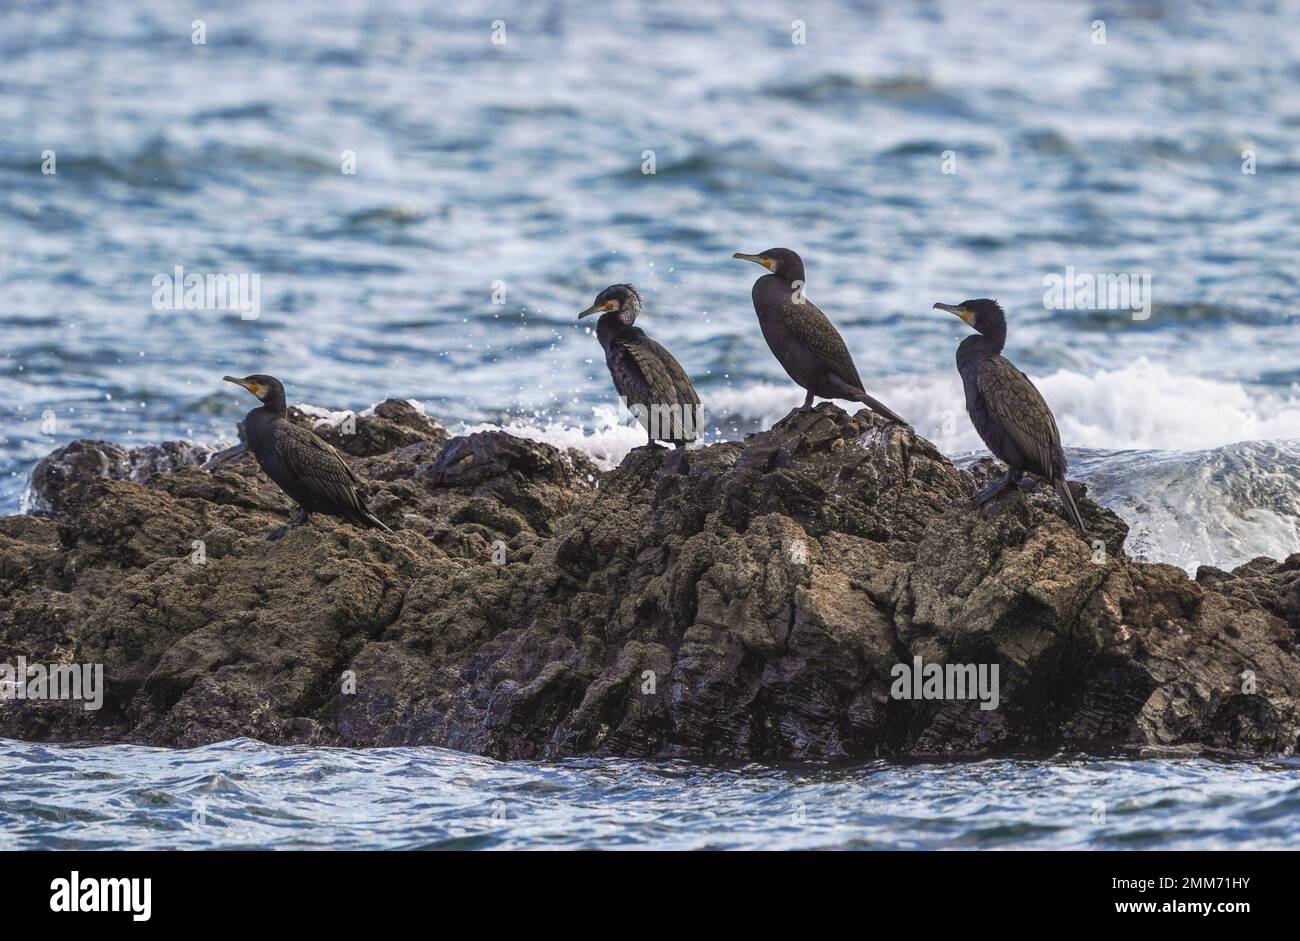 Groupe de grands cormorans (Phalacrocorax carbo) reposant sur un rocher en mer, Andalousie, Espagne. Banque D'Images